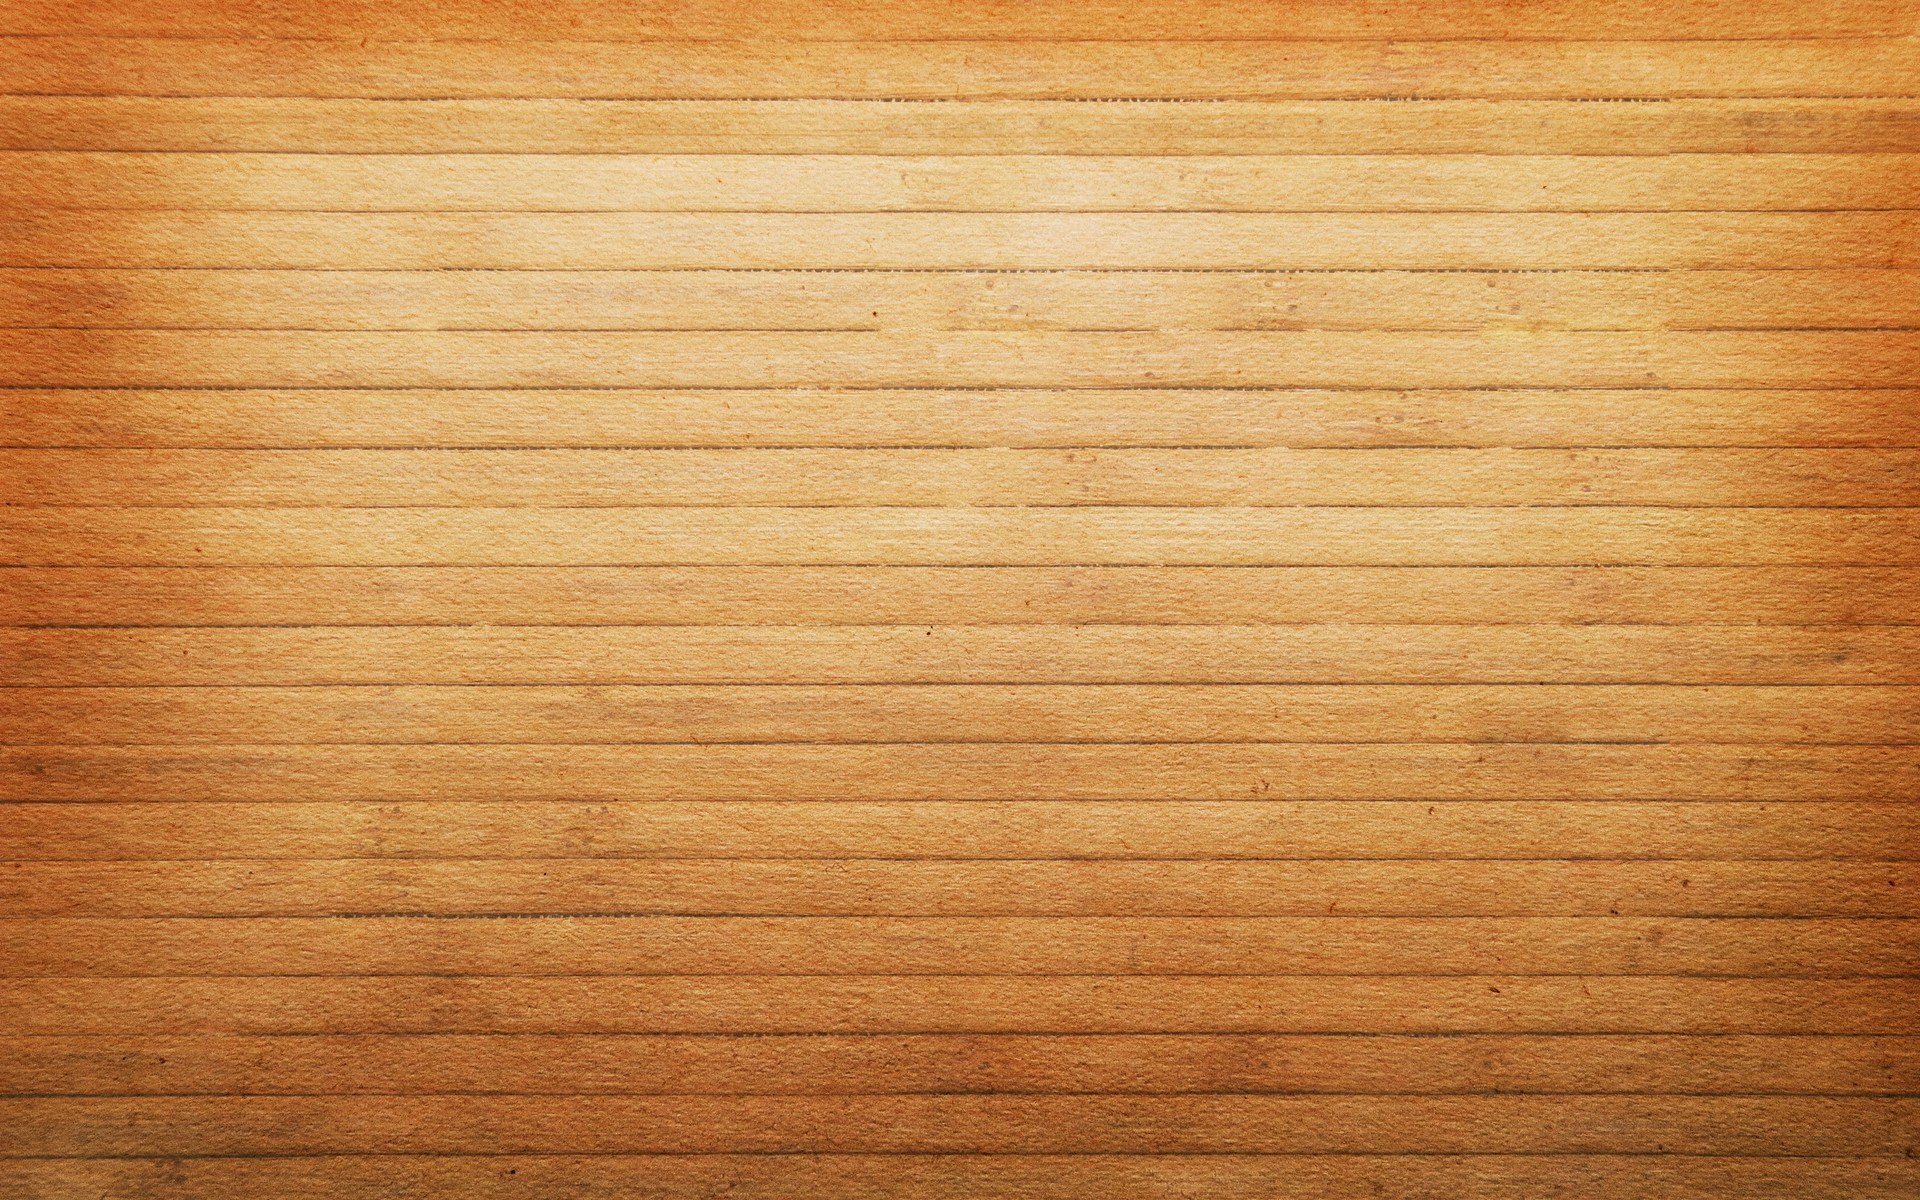 Tải miễn phí hình nền gỗ: Trang trí màn hình máy tính của bạn với những hình nền gỗ đầy chất thơm của chúng tôi và cùng tận hưởng không gian làm việc thoải mái và thư giãn nhất. Tất cả đều chỉ trong tầm tay của bạn với một vài cú clicks! Hãy tải về ngay hình nền gỗ miễn phí trên trang web của chúng tôi để tận hưởng ngay!